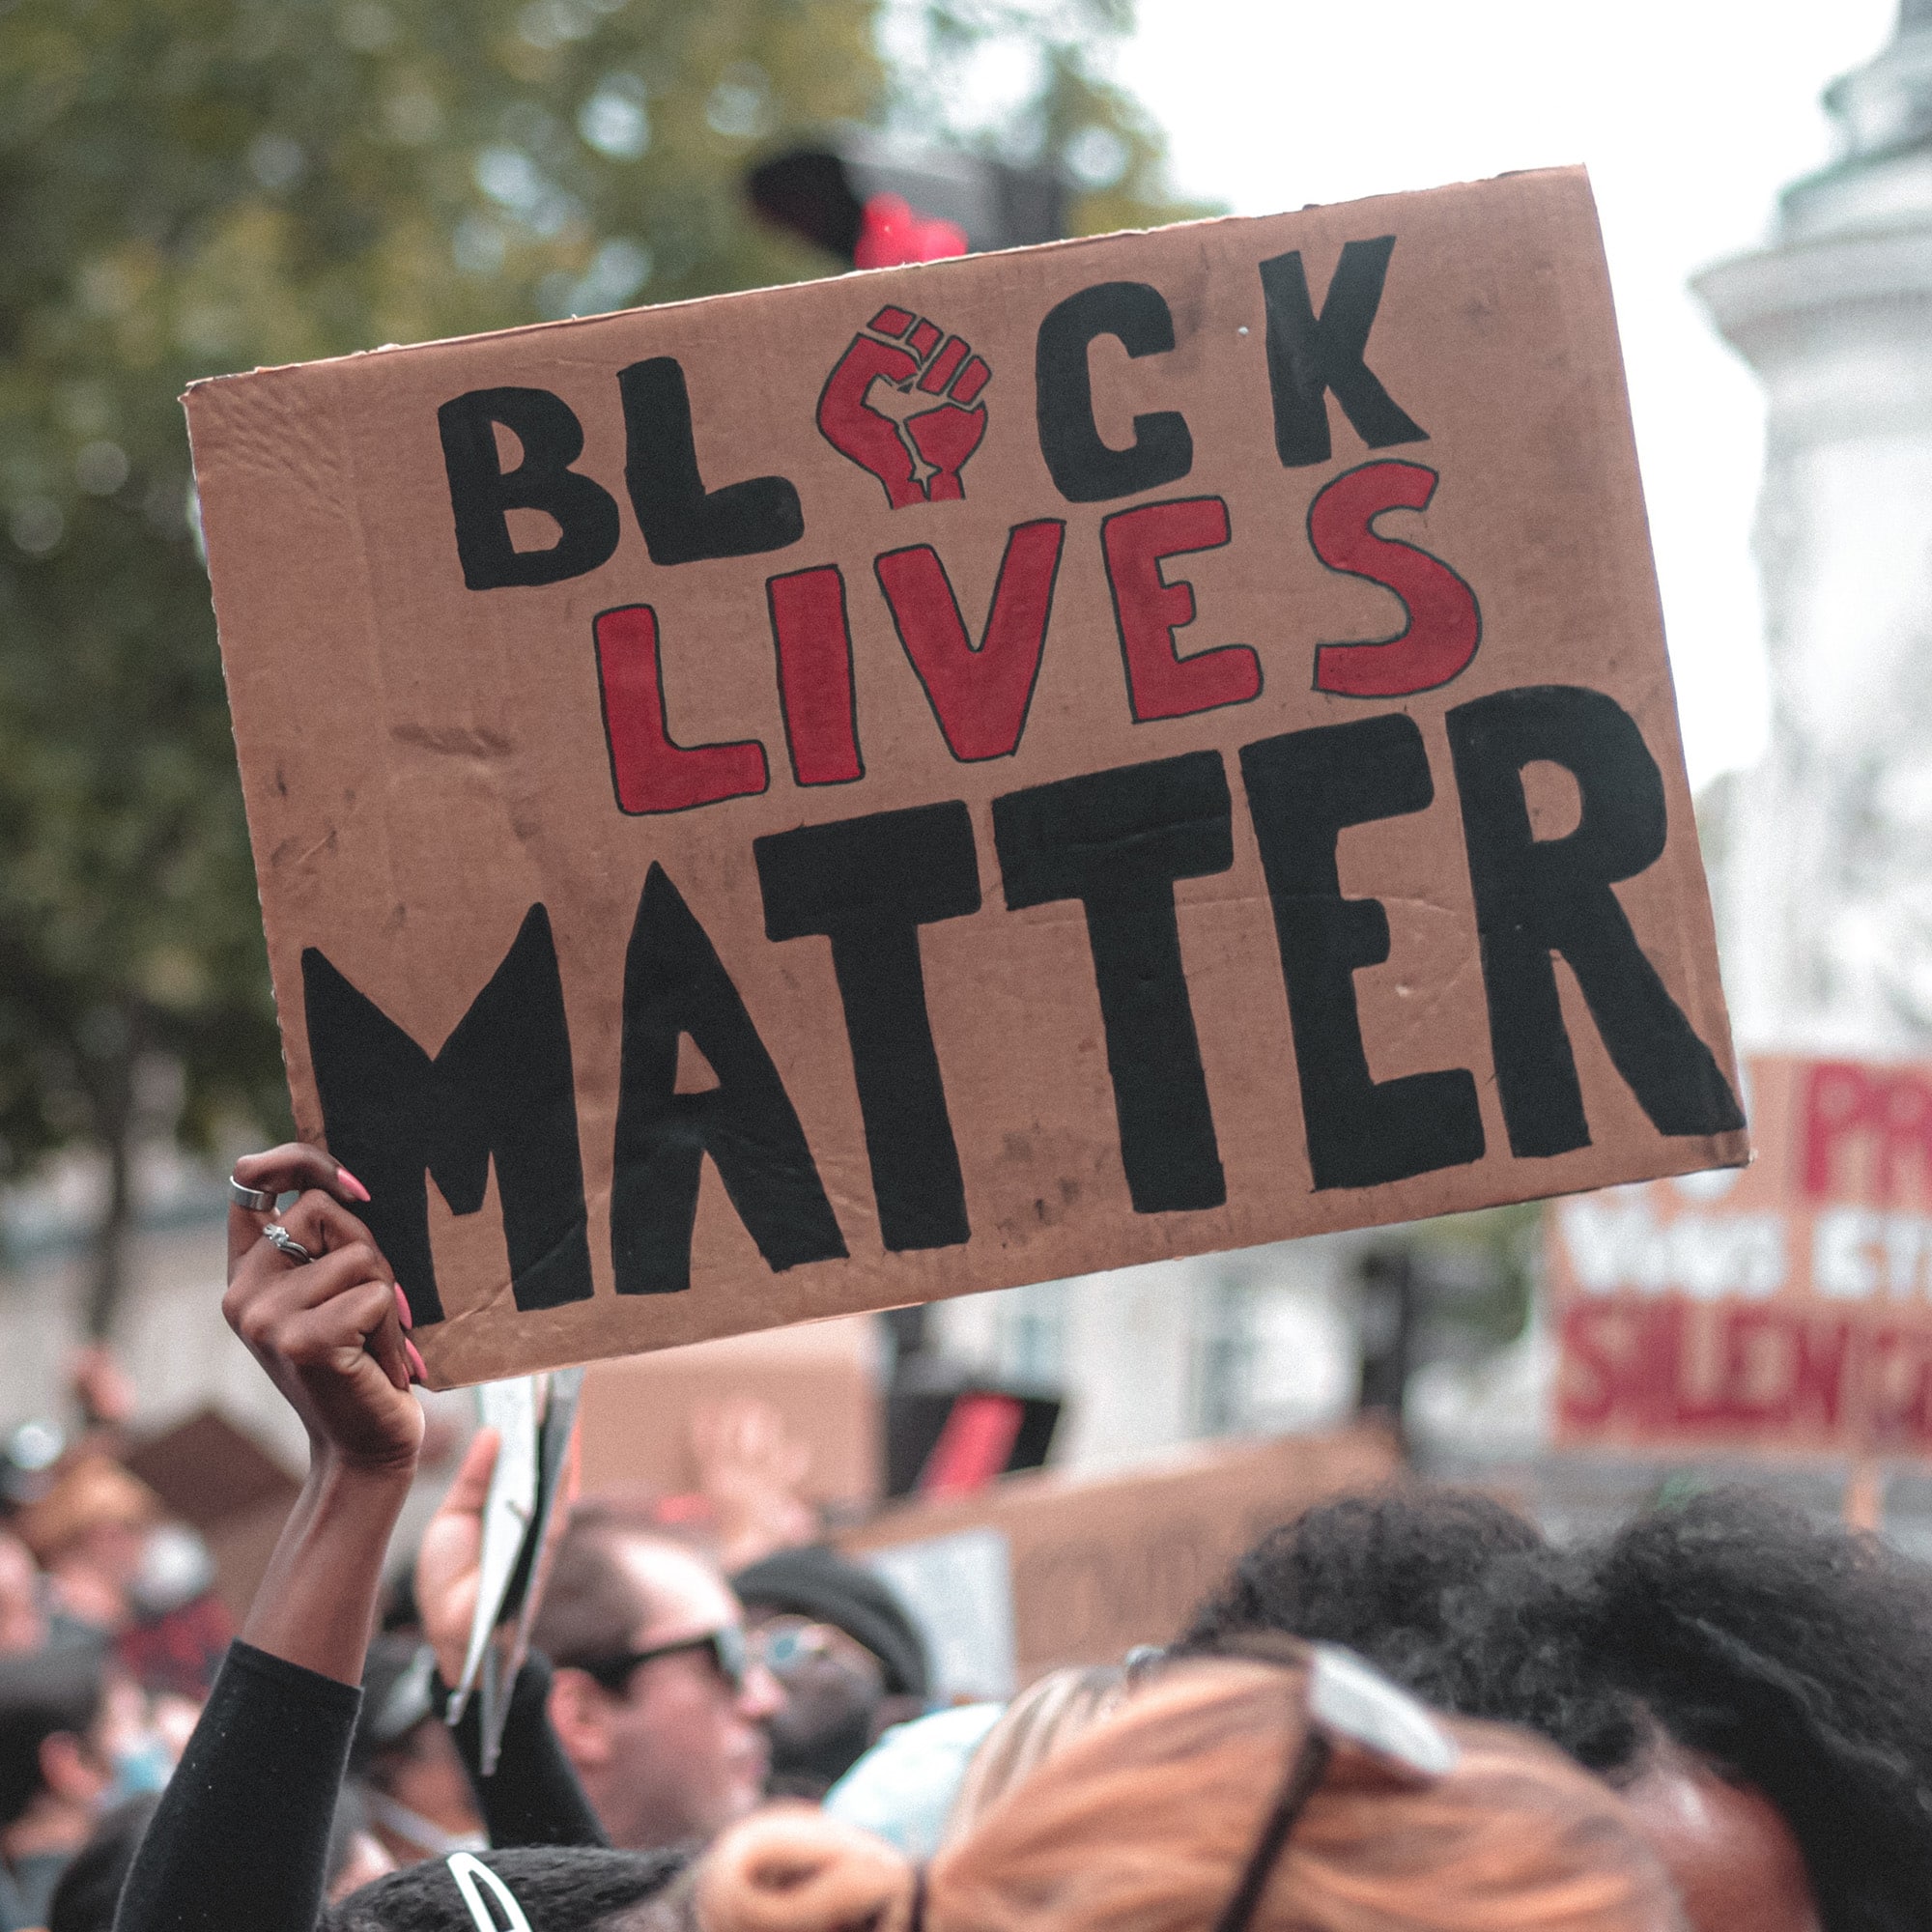 Protestor with "Black Lives Matter" sign